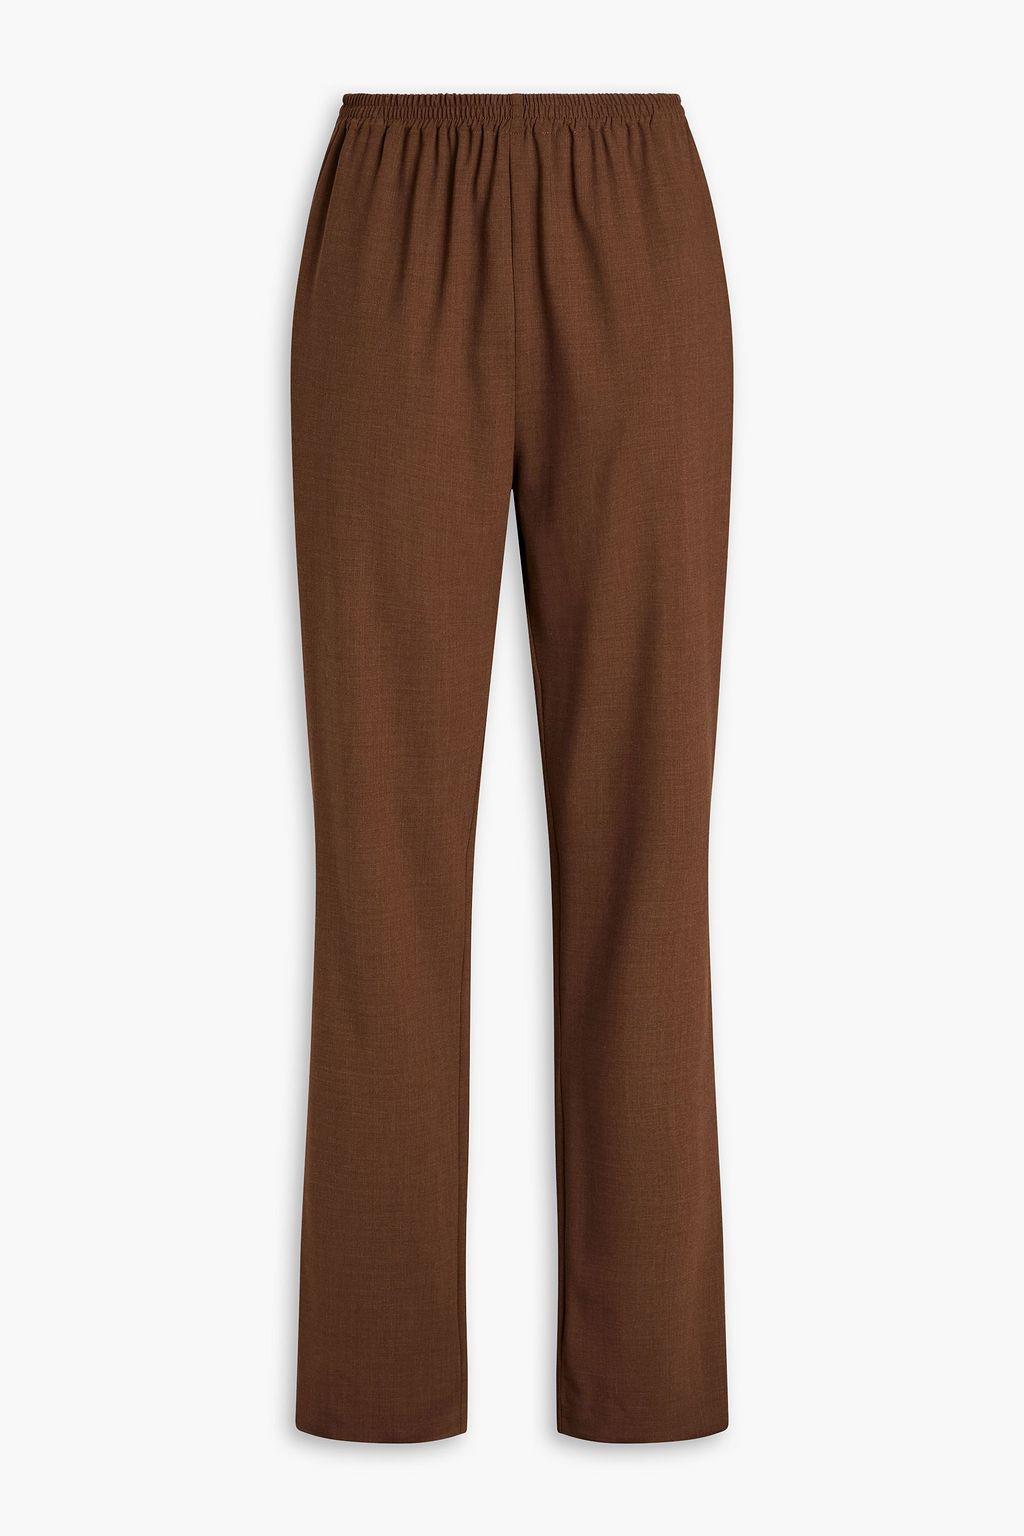 Зауженные брюки из эластичной шерсти ESKANDAR, коричневый